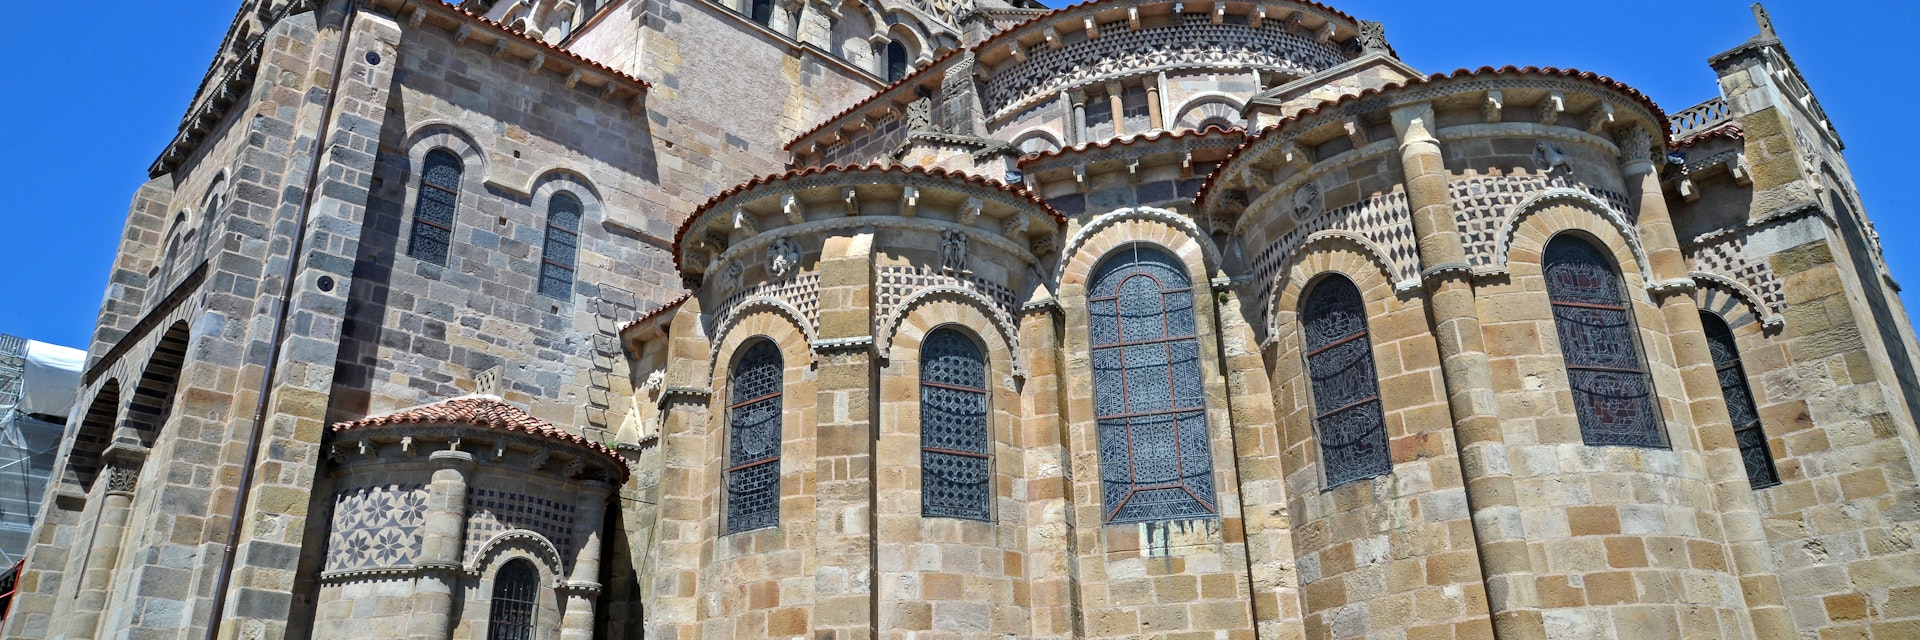 Abbey Saint Austremoine, Issoire, France.